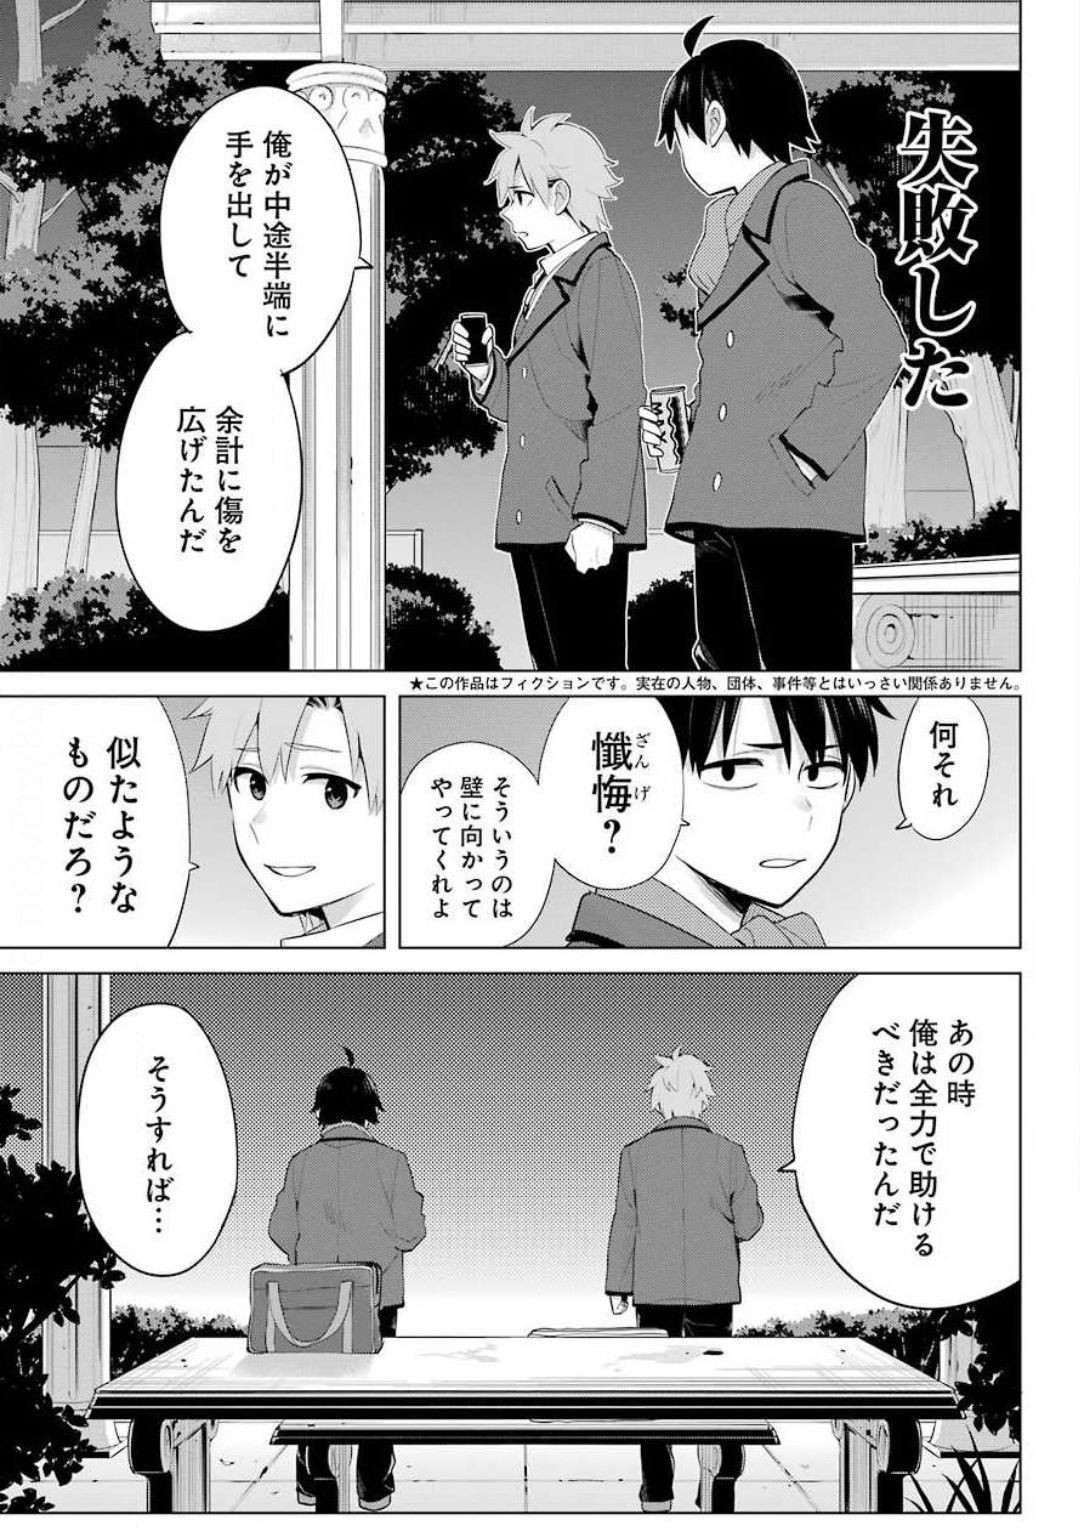 Yahari Ore no Seishun Rabukome wa Machigatte Iru. - Monologue - Chapter 89 - Page 4